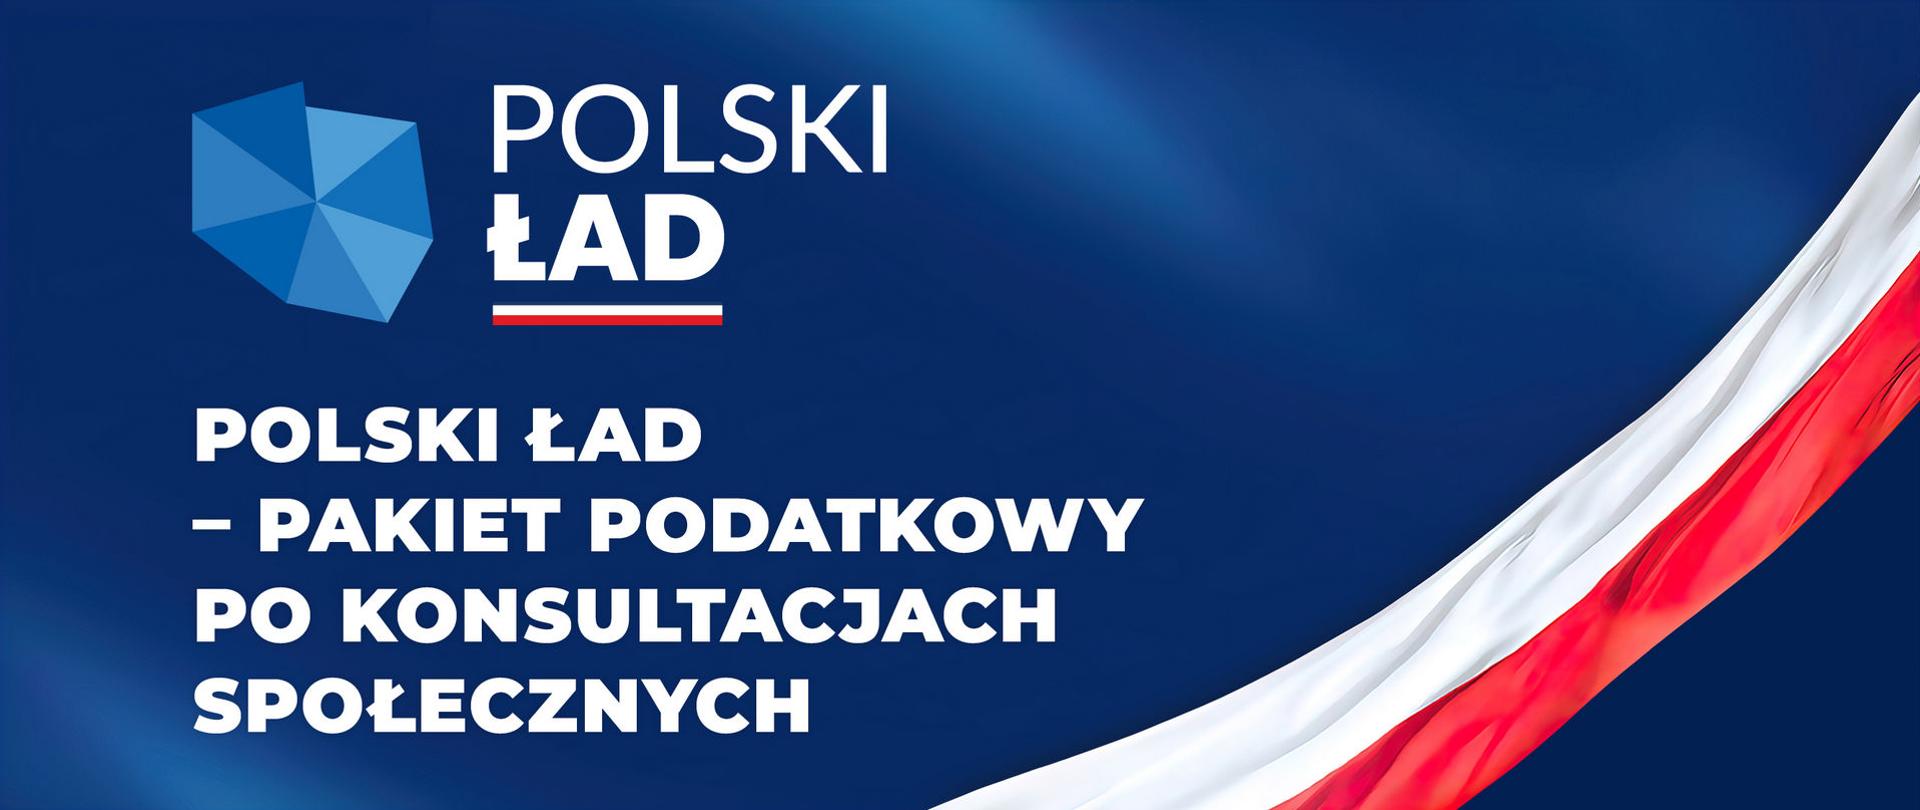 Kontur Polski i napis Polski Ład - pakiet podatkowy po konsultacjach społecznych.